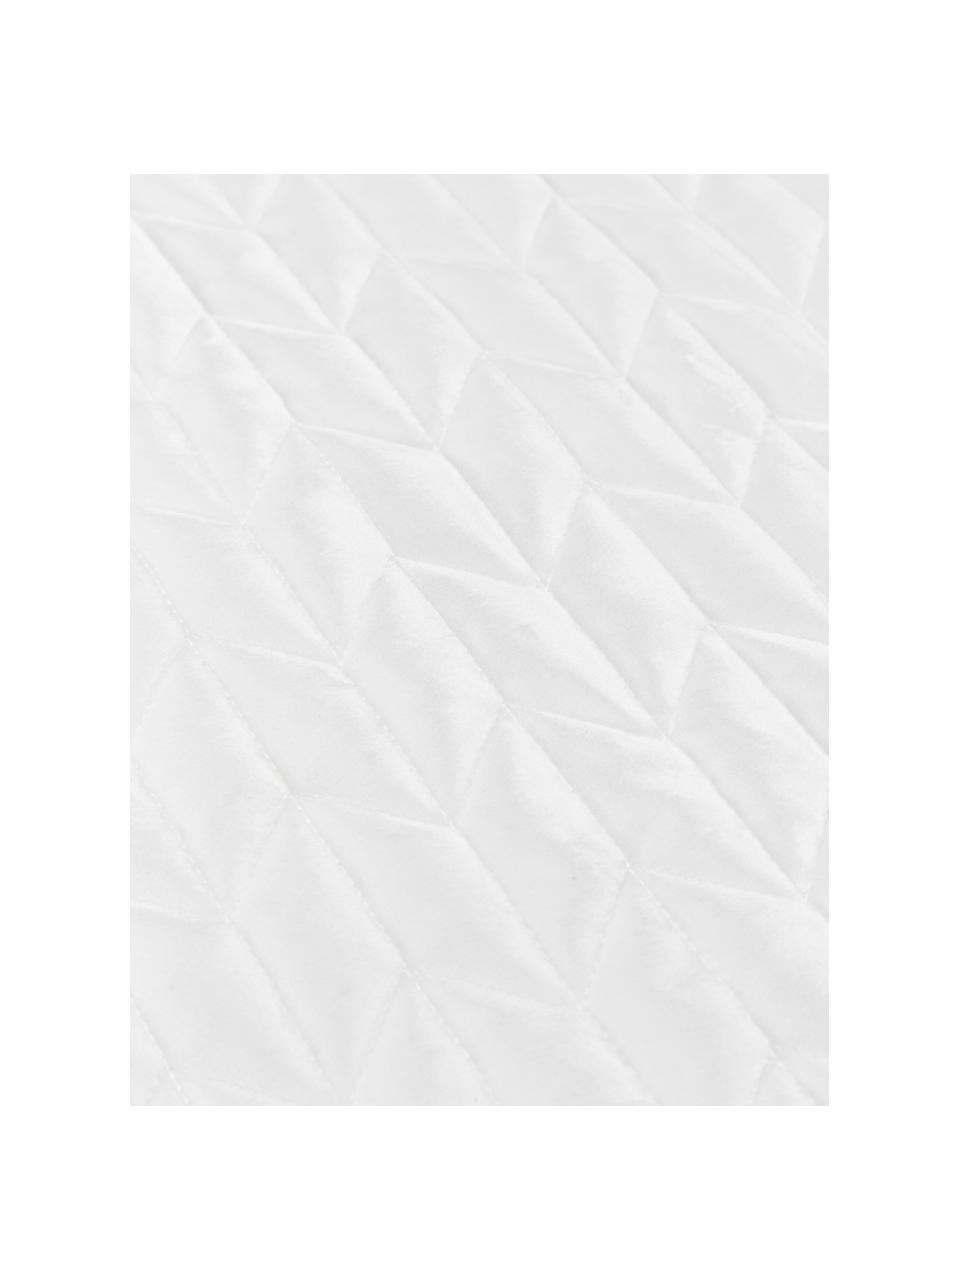 Gesteppte Tagesdecke Tily aus Samt, 100% Polyester, Weiß, B 180 x L 260 cm (für Betten bis 140 x 200 cm)